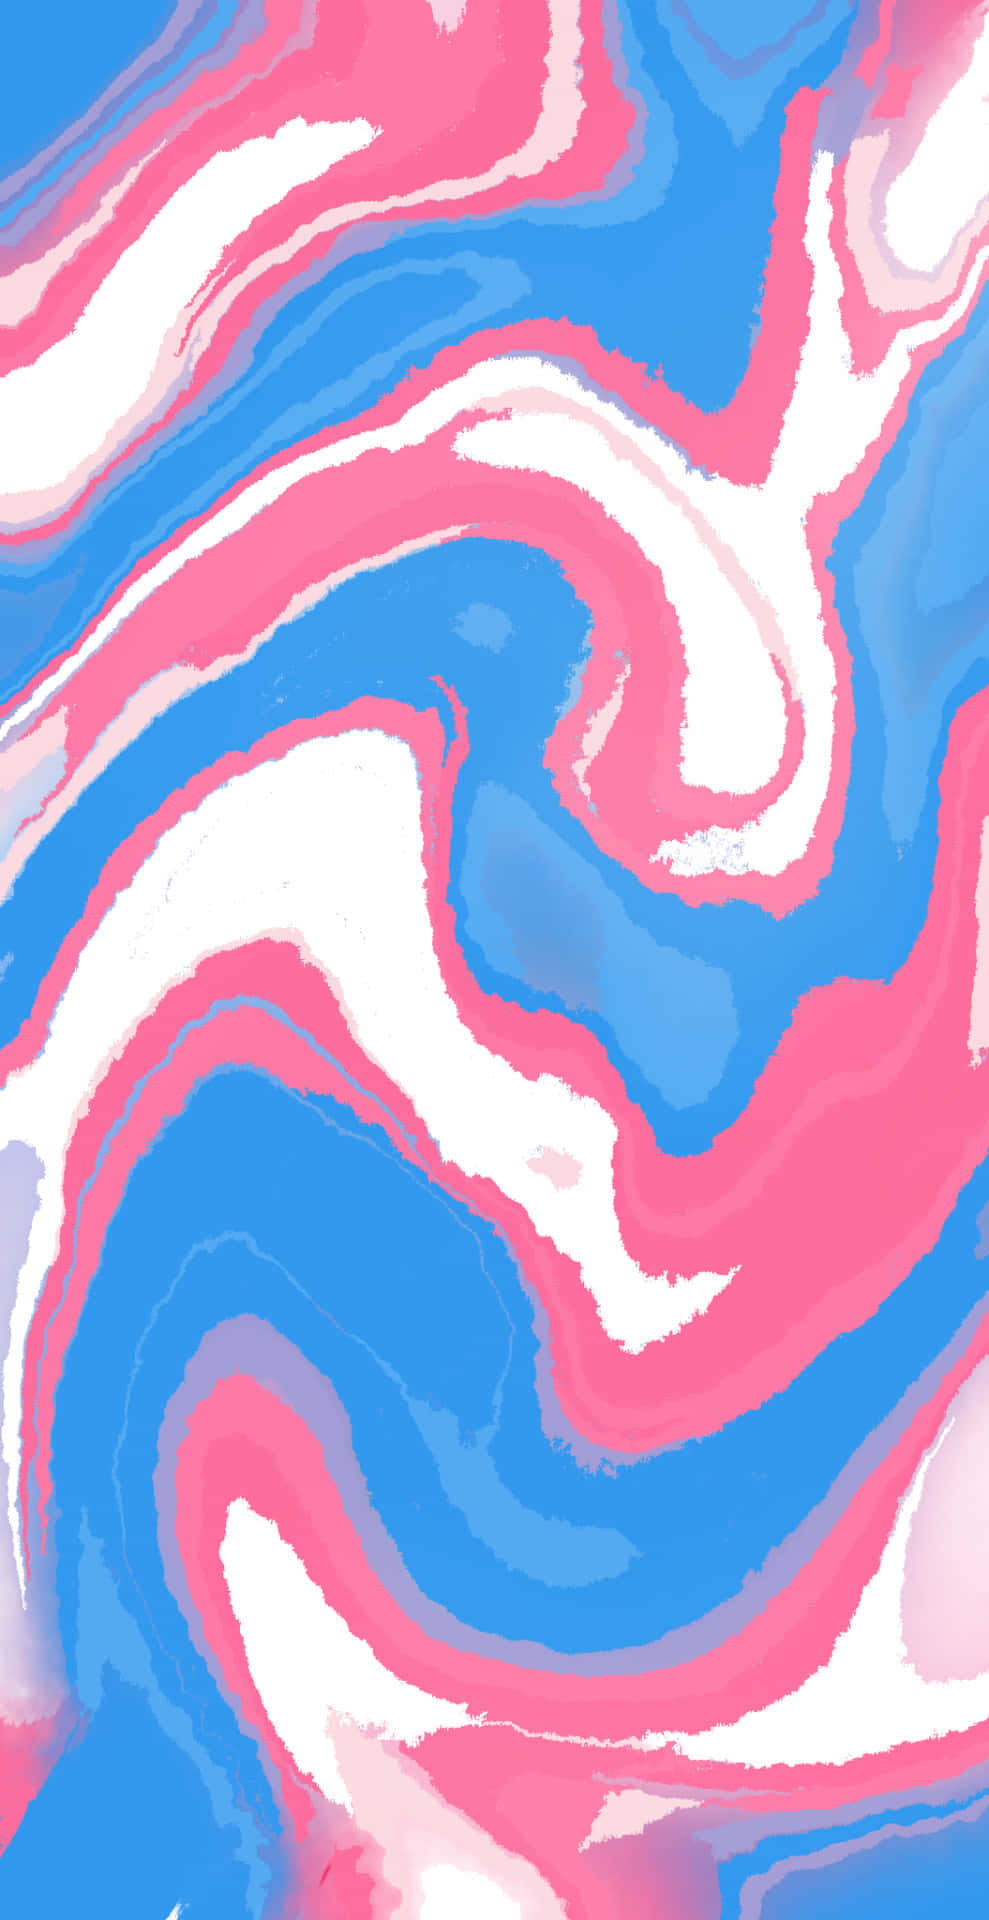 Umpadrão Em Espiral Rosa E Azul Em Um Fundo Azul. Papel de Parede